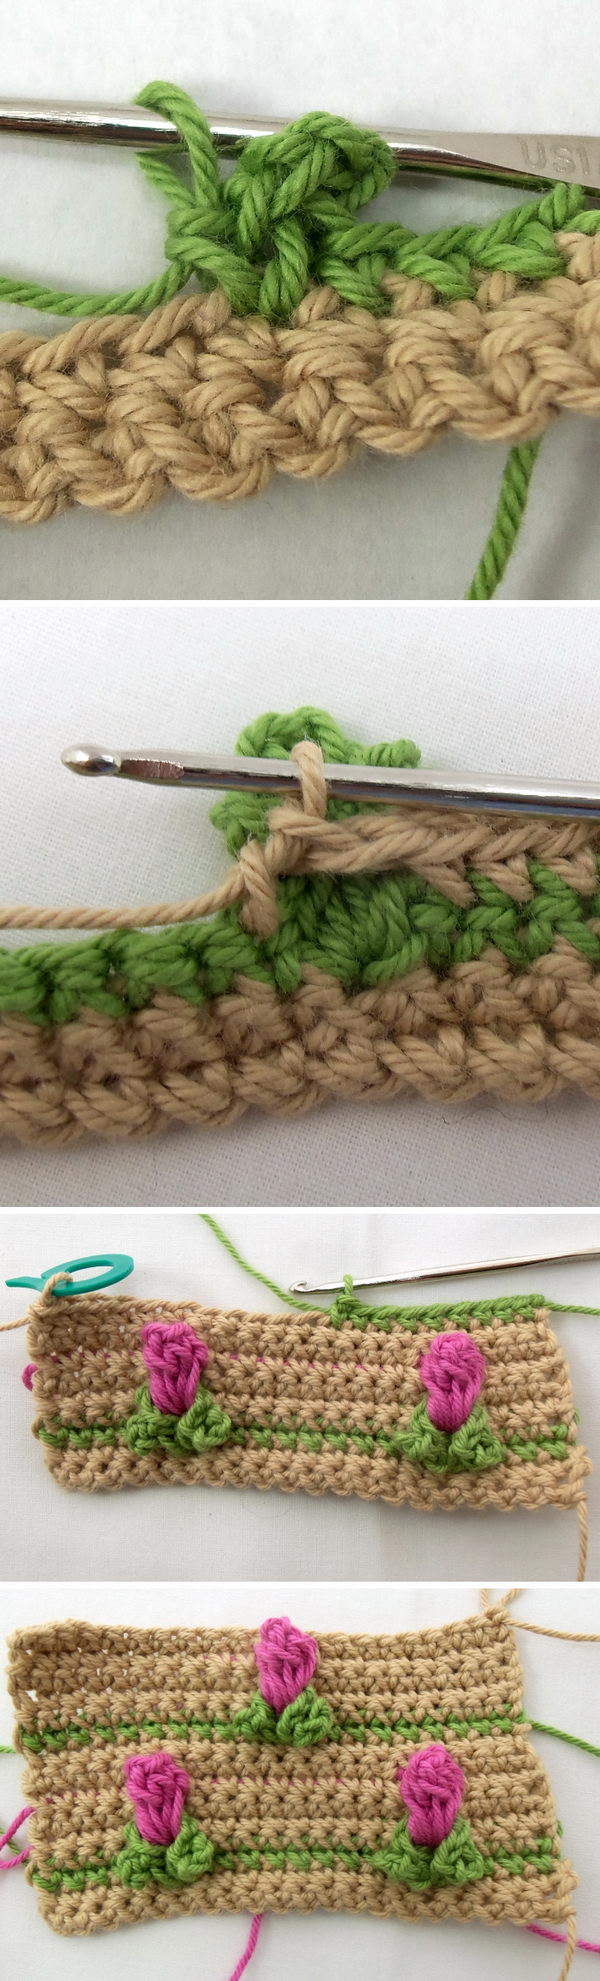 crochet flower stitch patterns 1